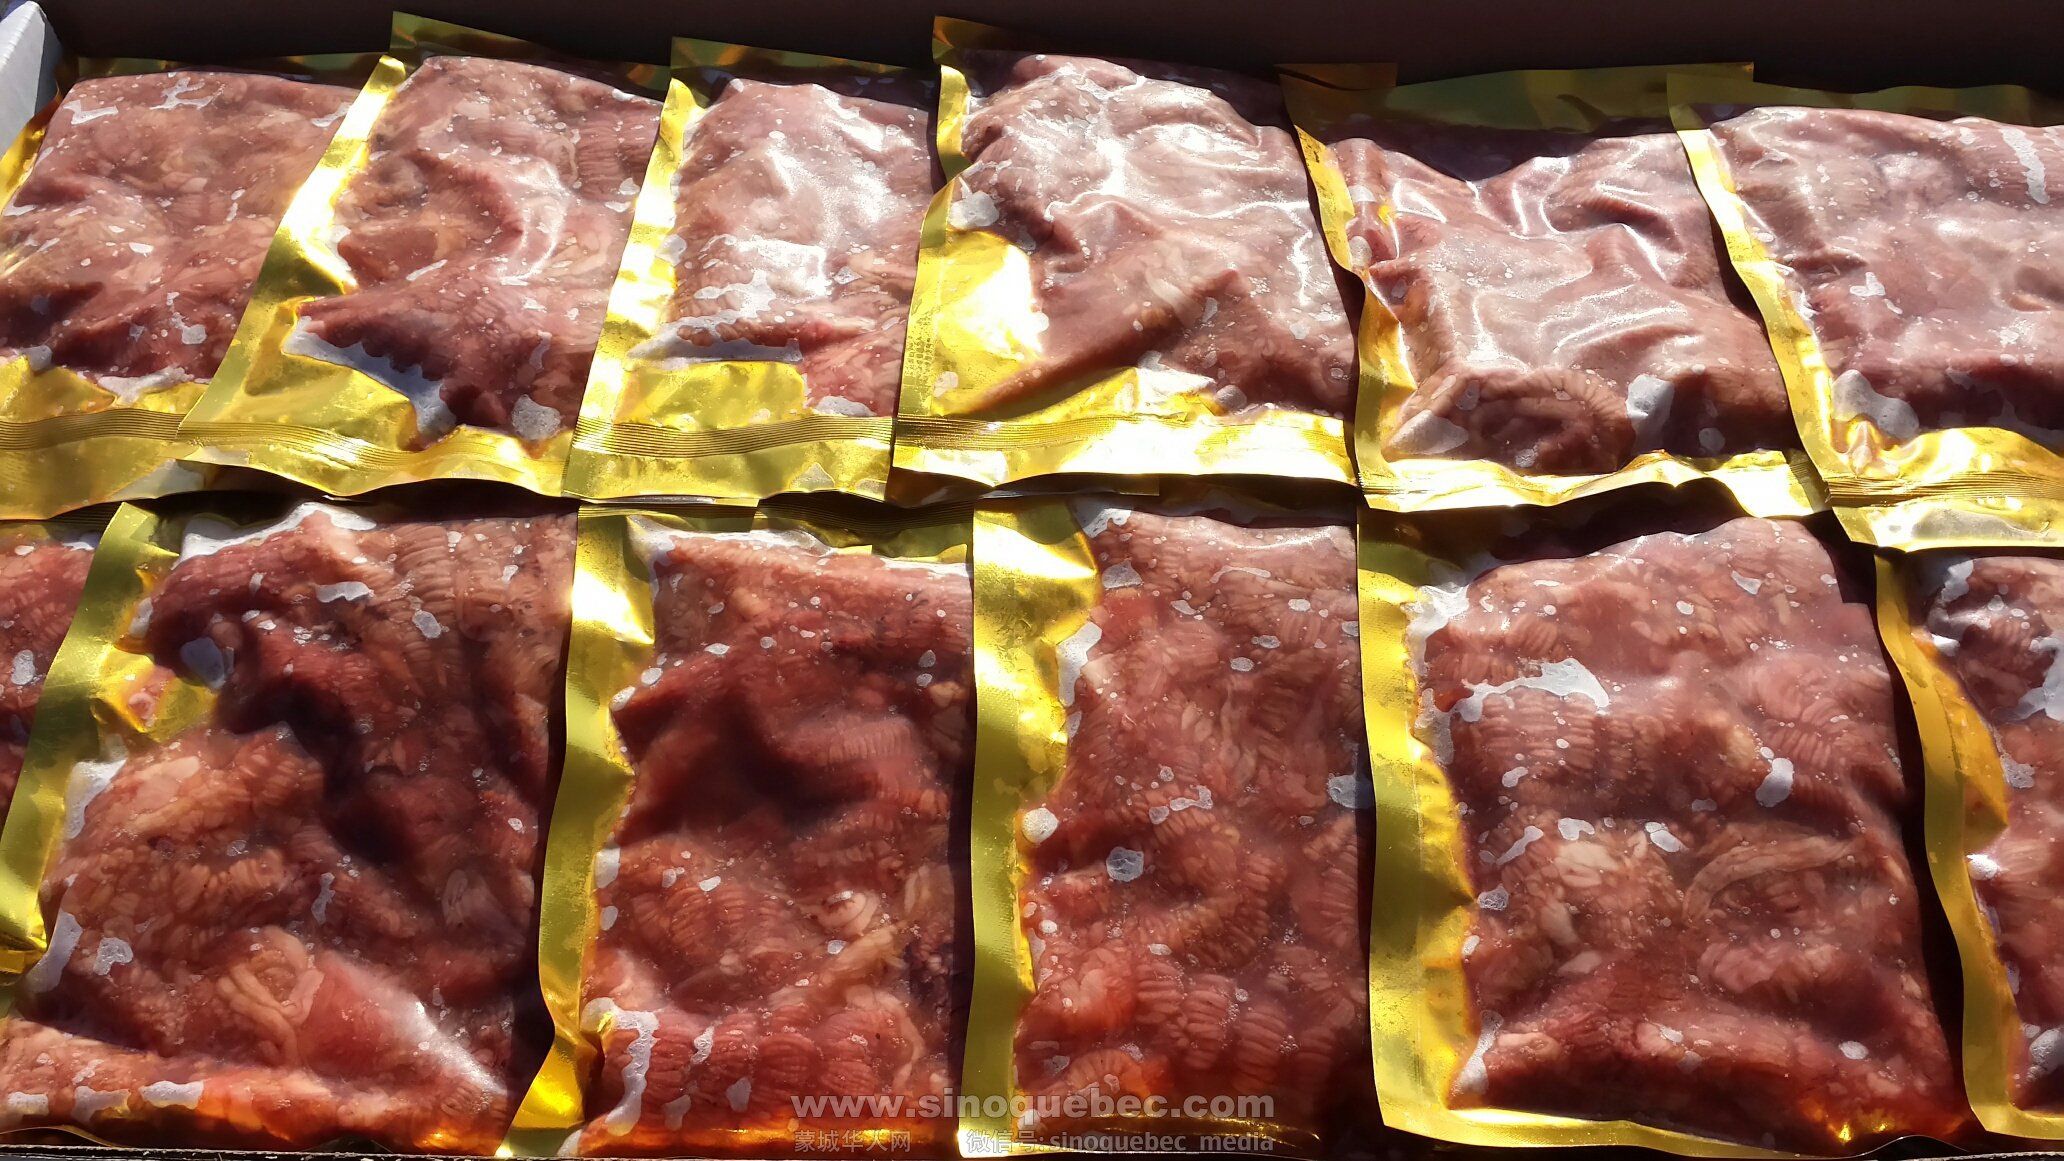 0.5 lbs bag meat (2).jpg